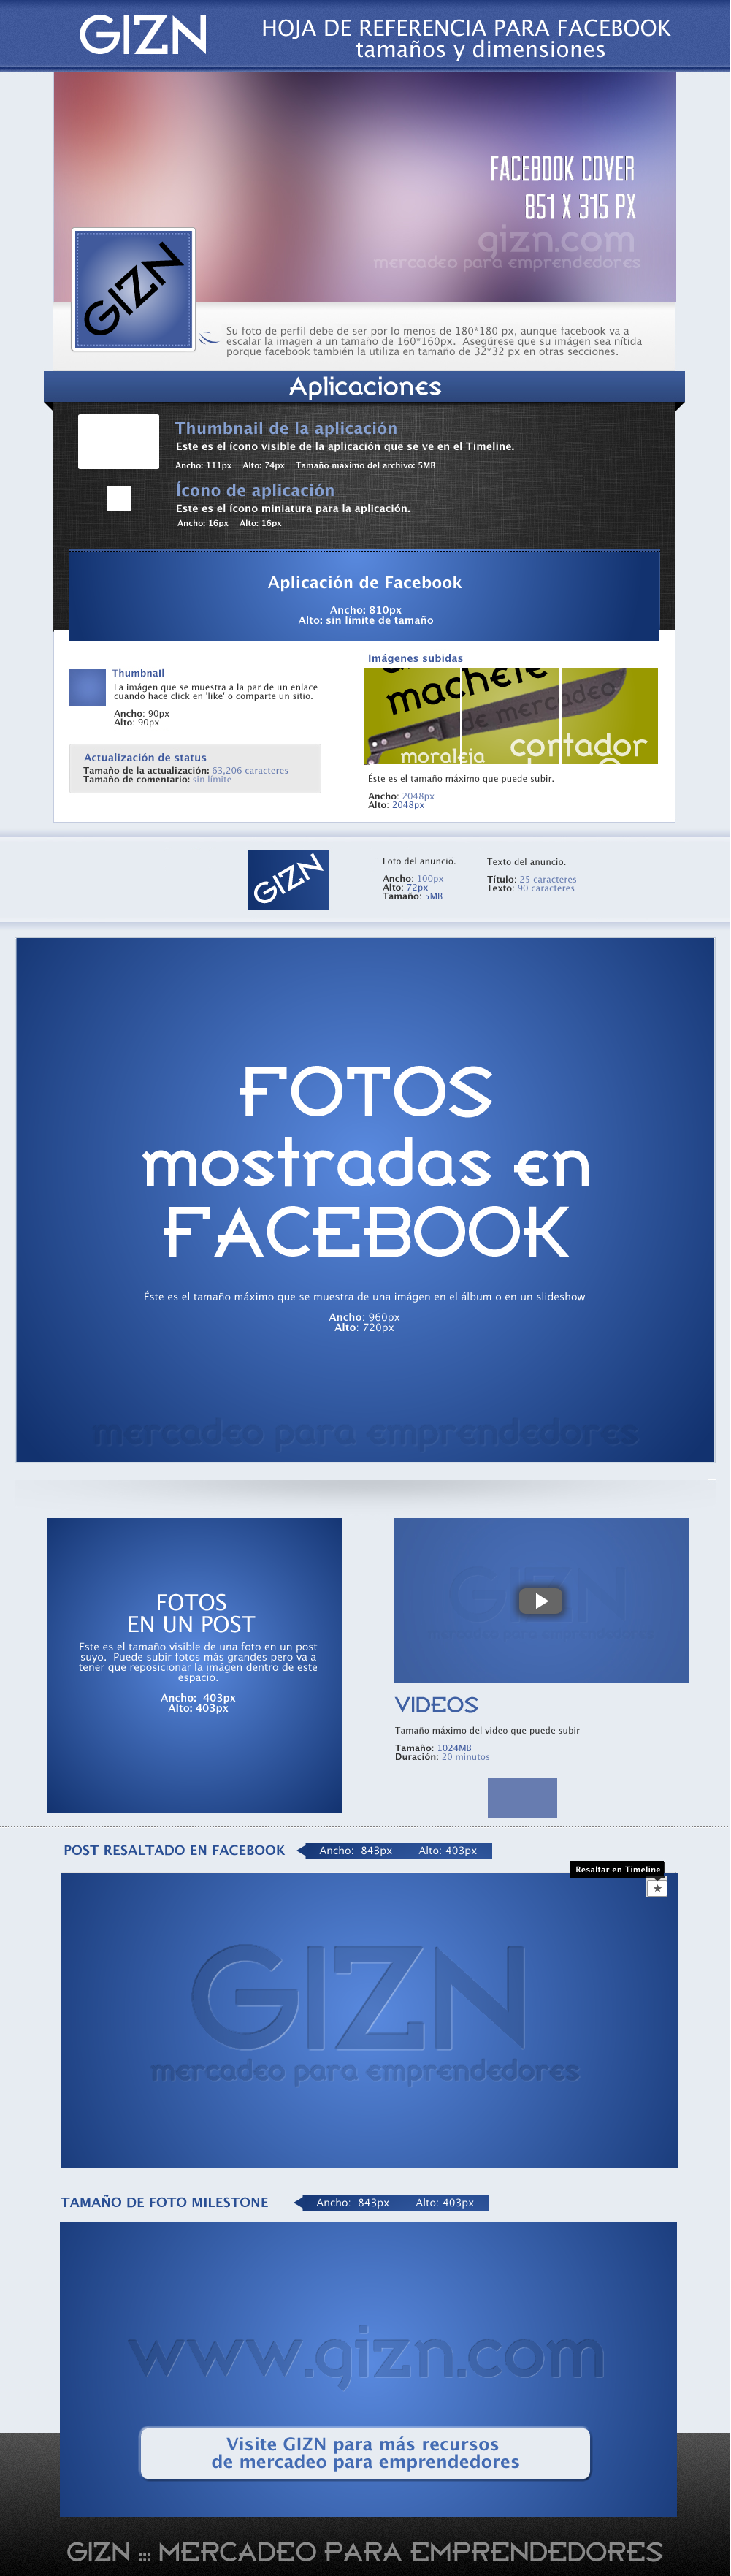 Fotos para Facebook - tamaños y dimensiones :: GIZN